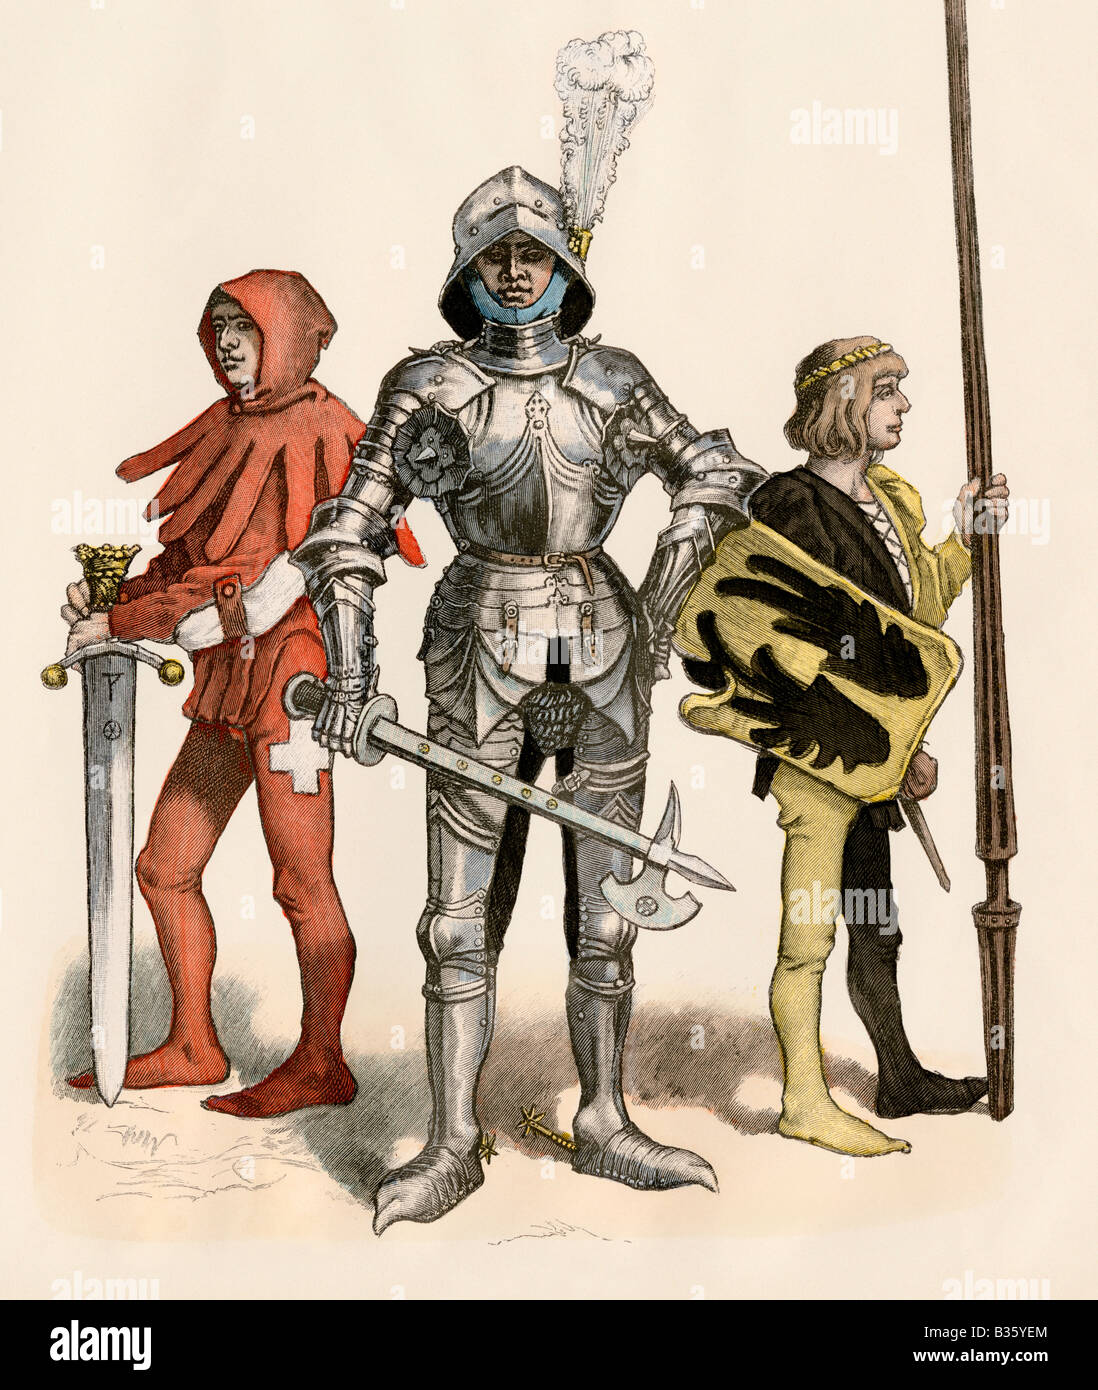 Schweizer Ritter in Rüstung und mit seiner Seite und knappe 1400s.  Hand-farbig drucken Stockfotografie - Alamy